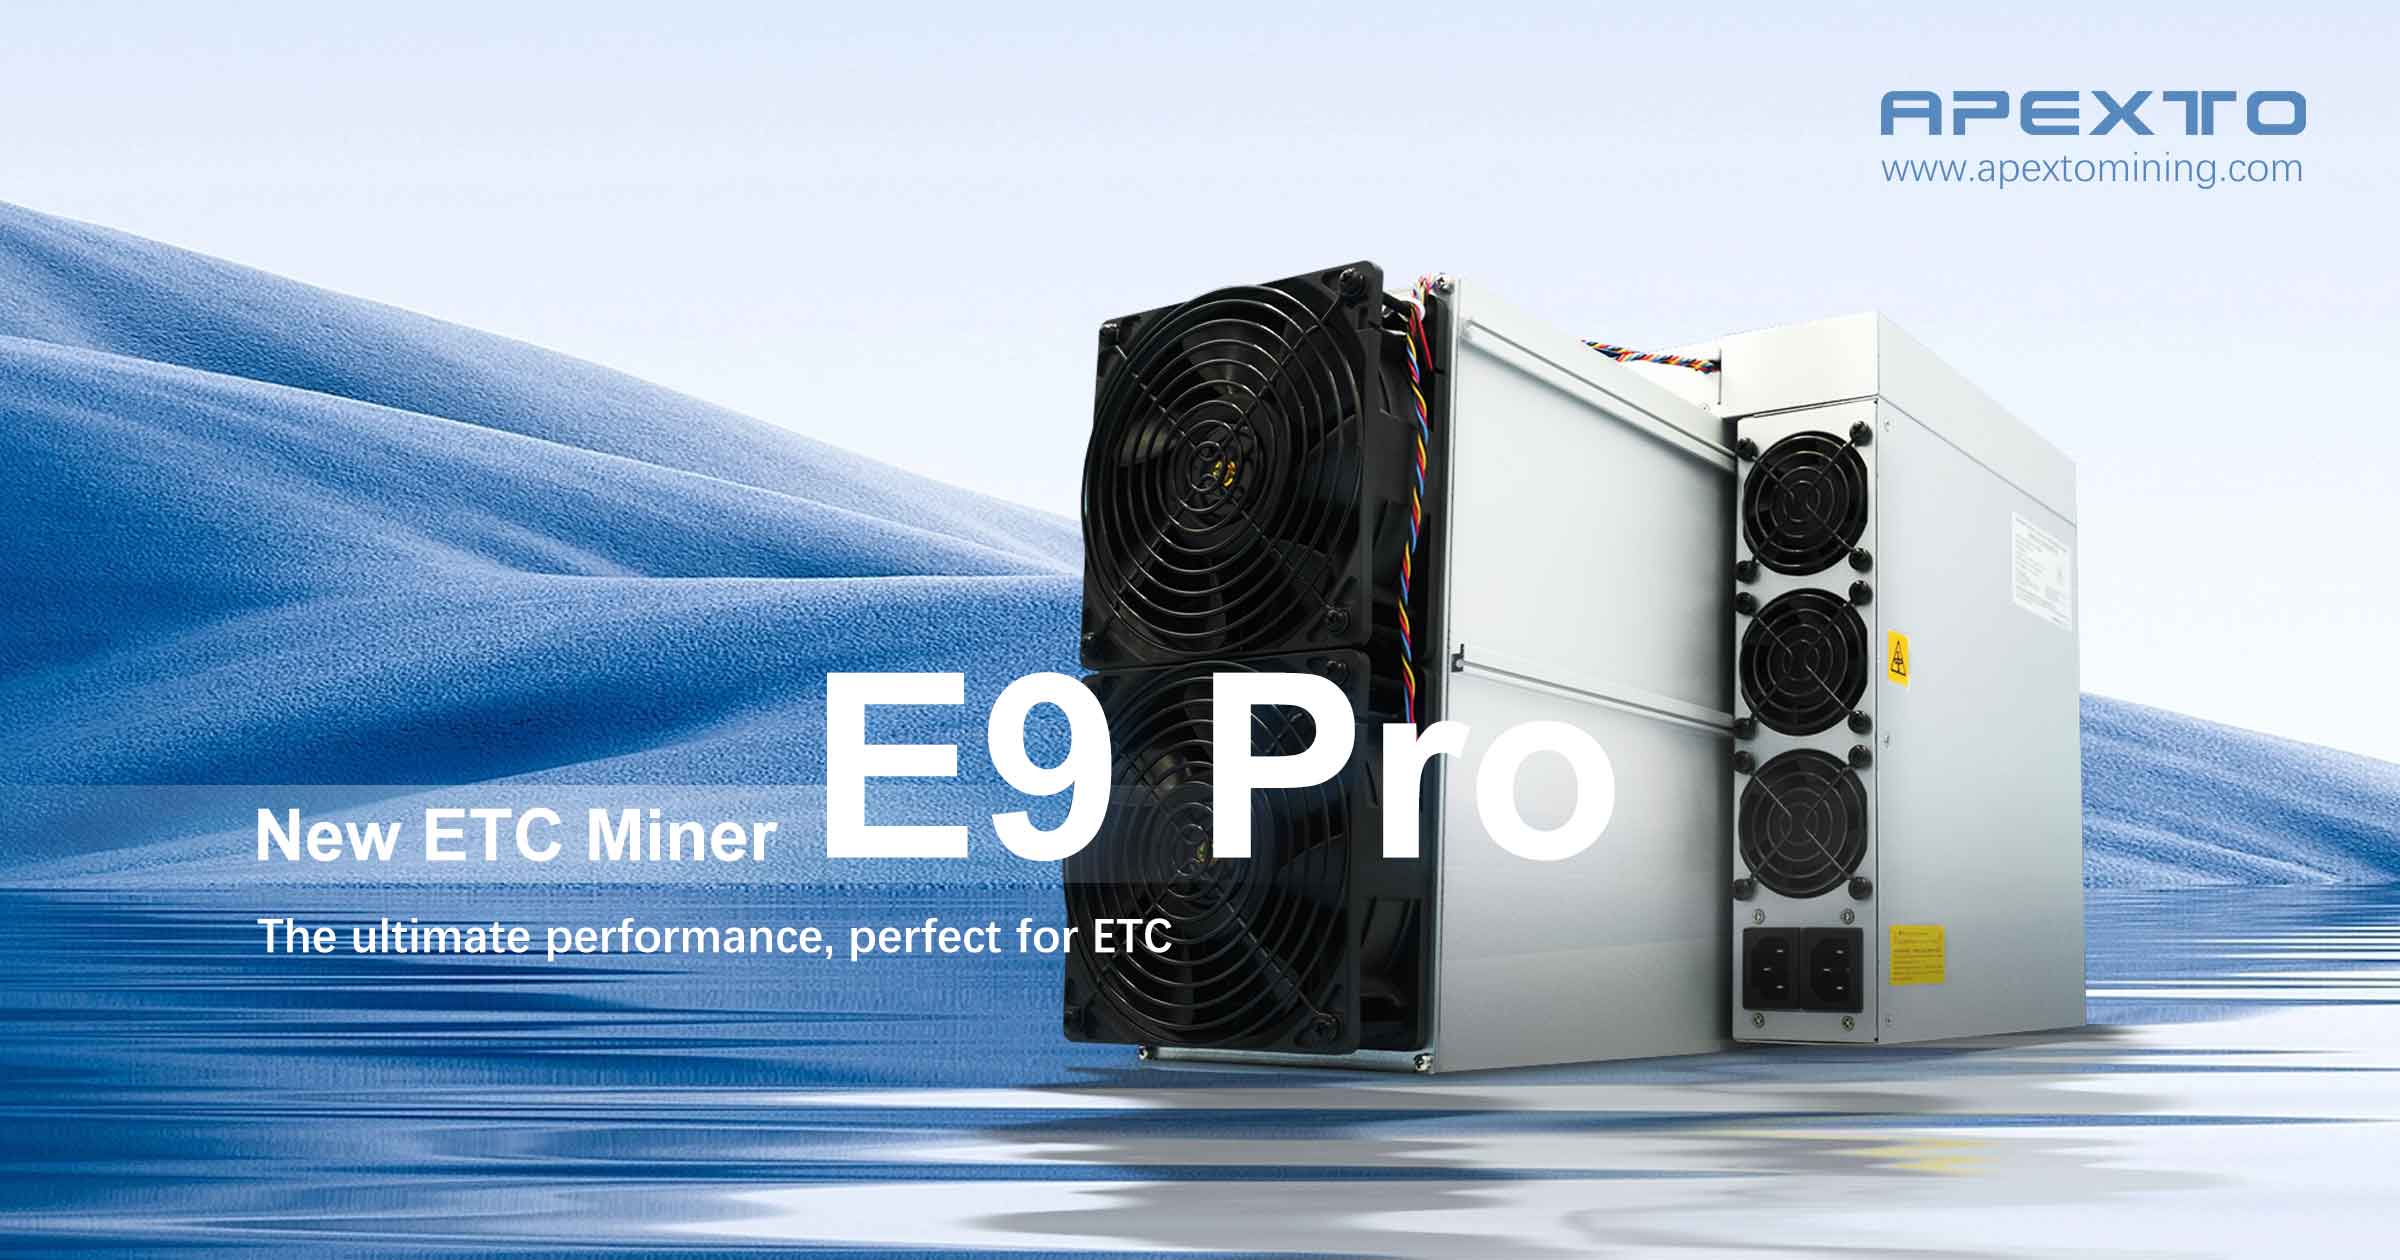 Bitmain acaba de lançar o minerador Ethereum Classic mais lucrativo!O minerador Antminer E9 Pro ETC